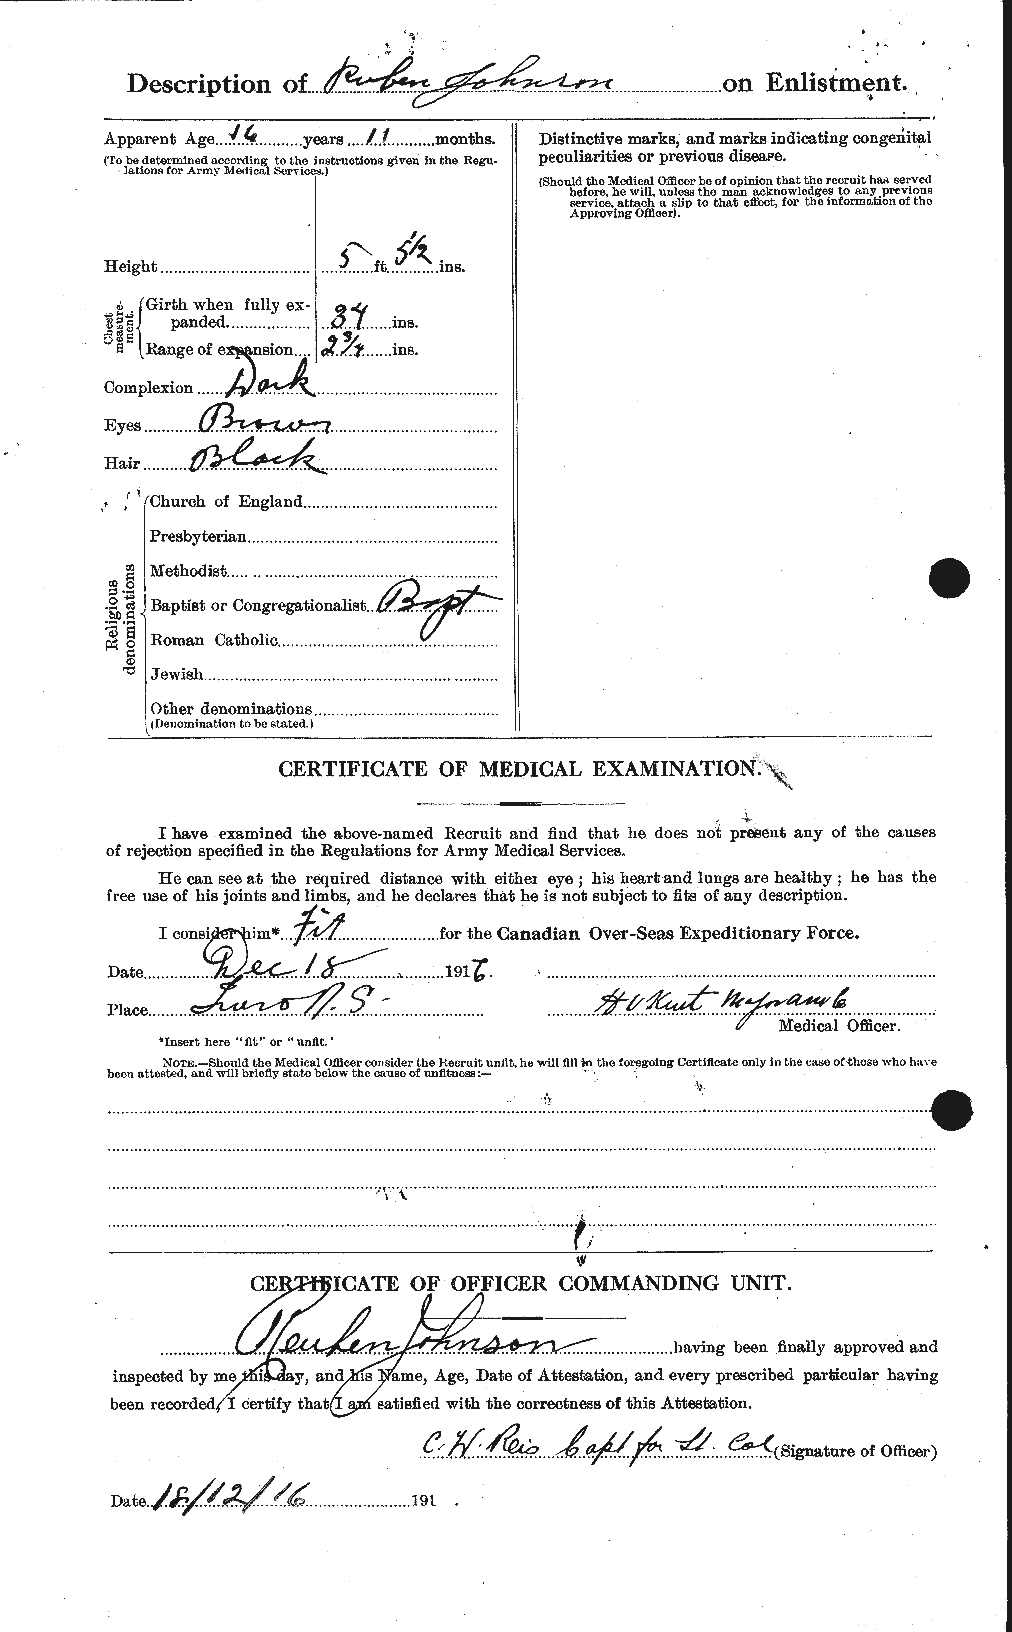 Dossiers du Personnel de la Première Guerre mondiale - CEC 417327b